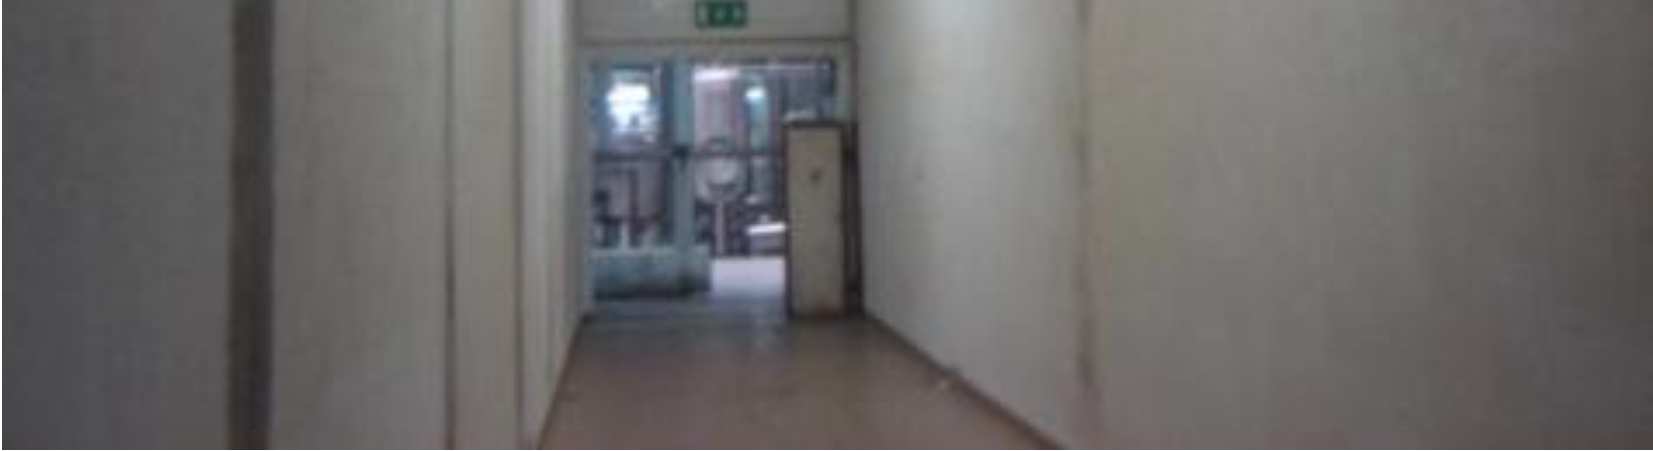 Imagem 20: 20: Localização da Adega Clássica na UNICER No interior da adega, falta de iluminação